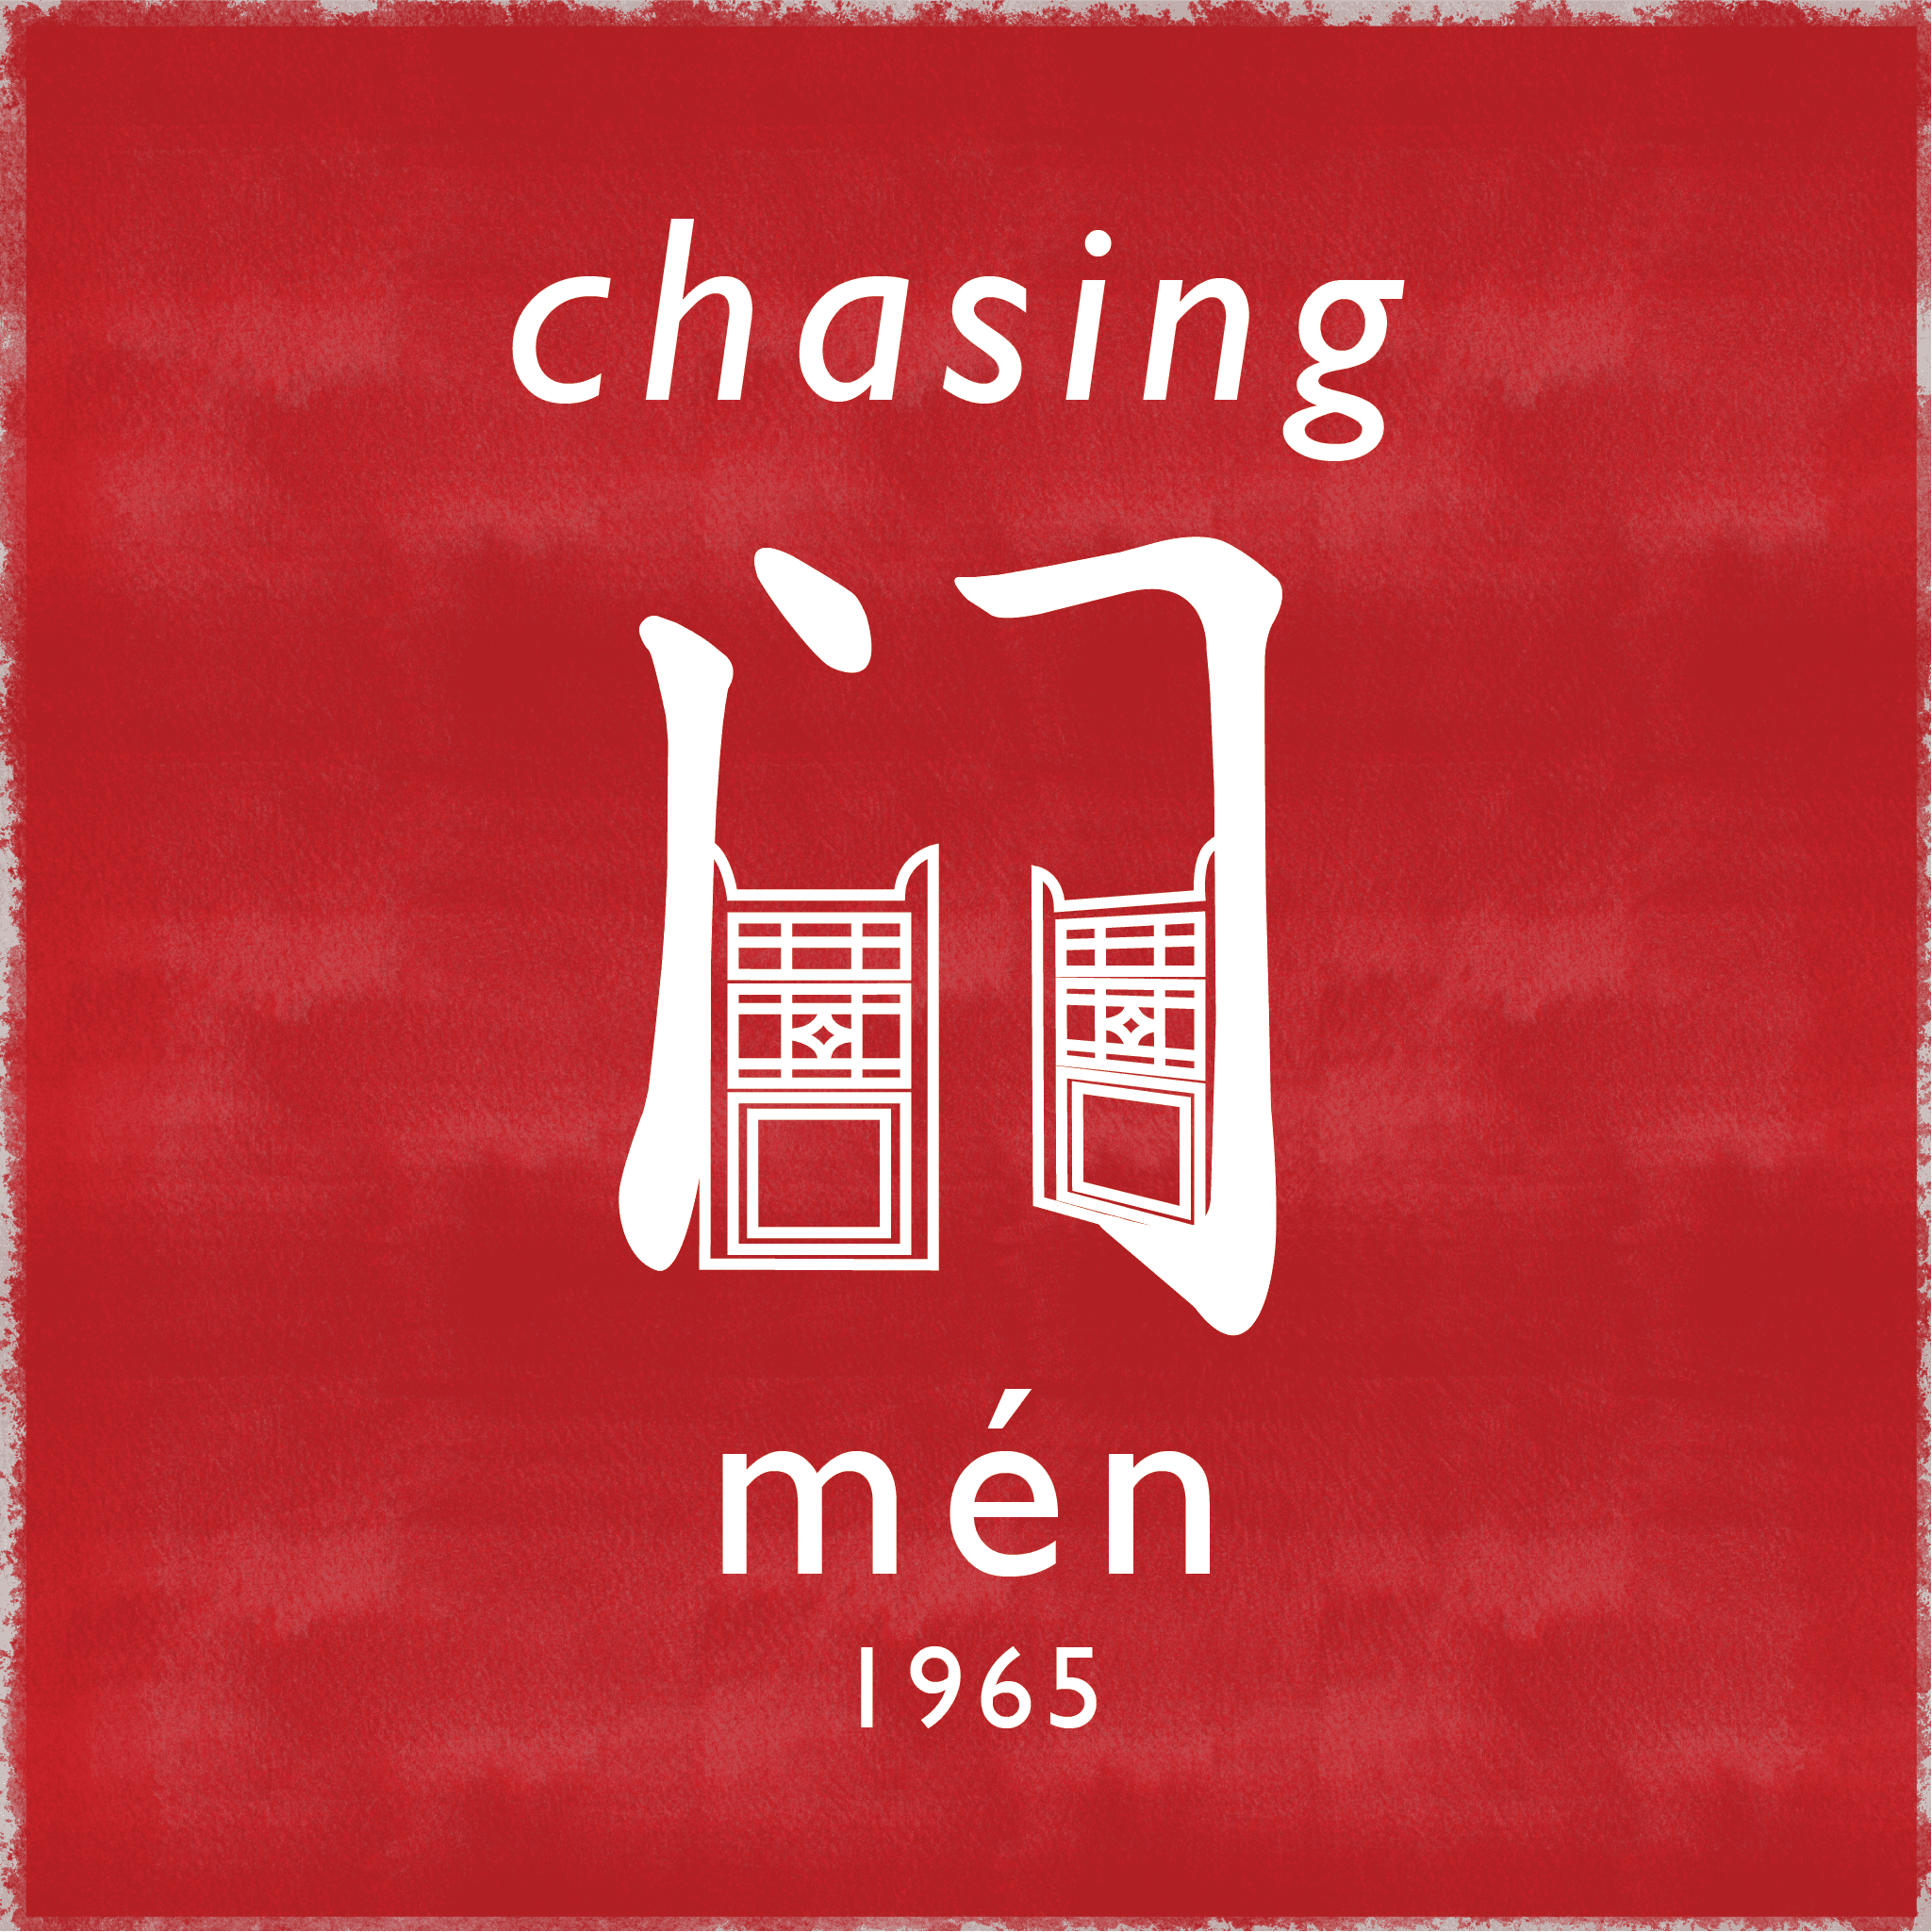 chasing men